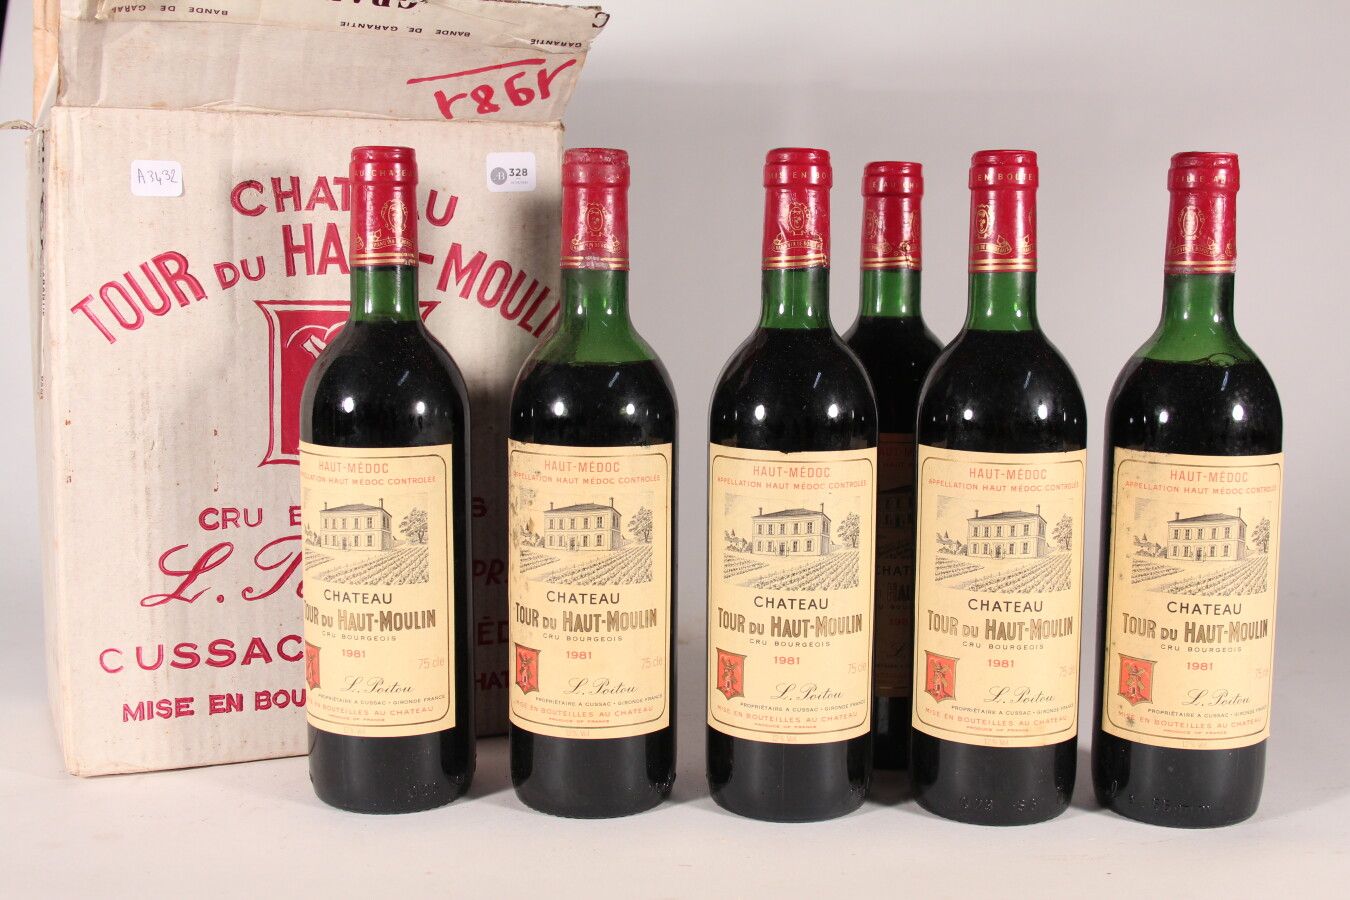 Null 1981 - Château La Tour du Haut Moulin

Haut Médoc - 6 bottles